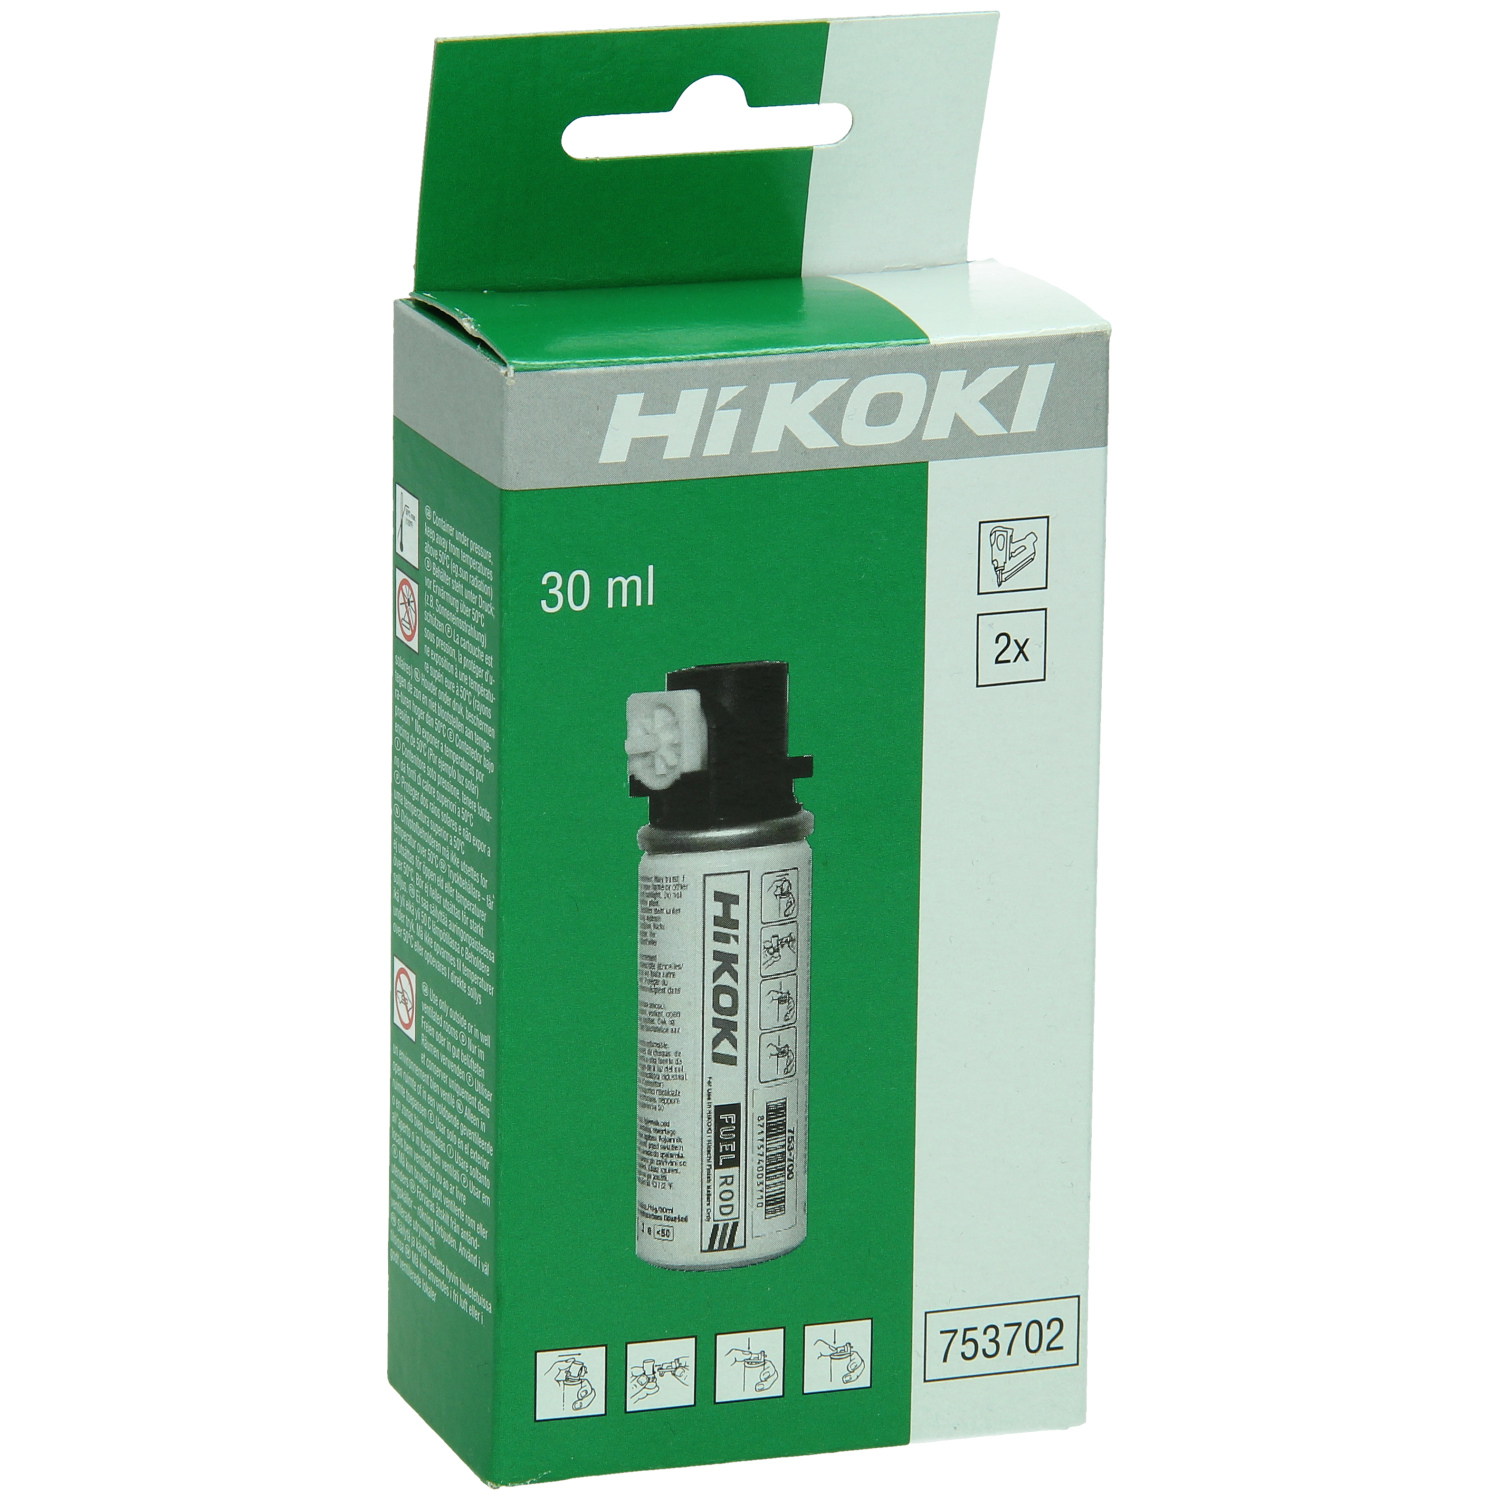 Hitachi Gaskartuschen 30 ml für NT50GS, NT65GB, NT65GS -753702